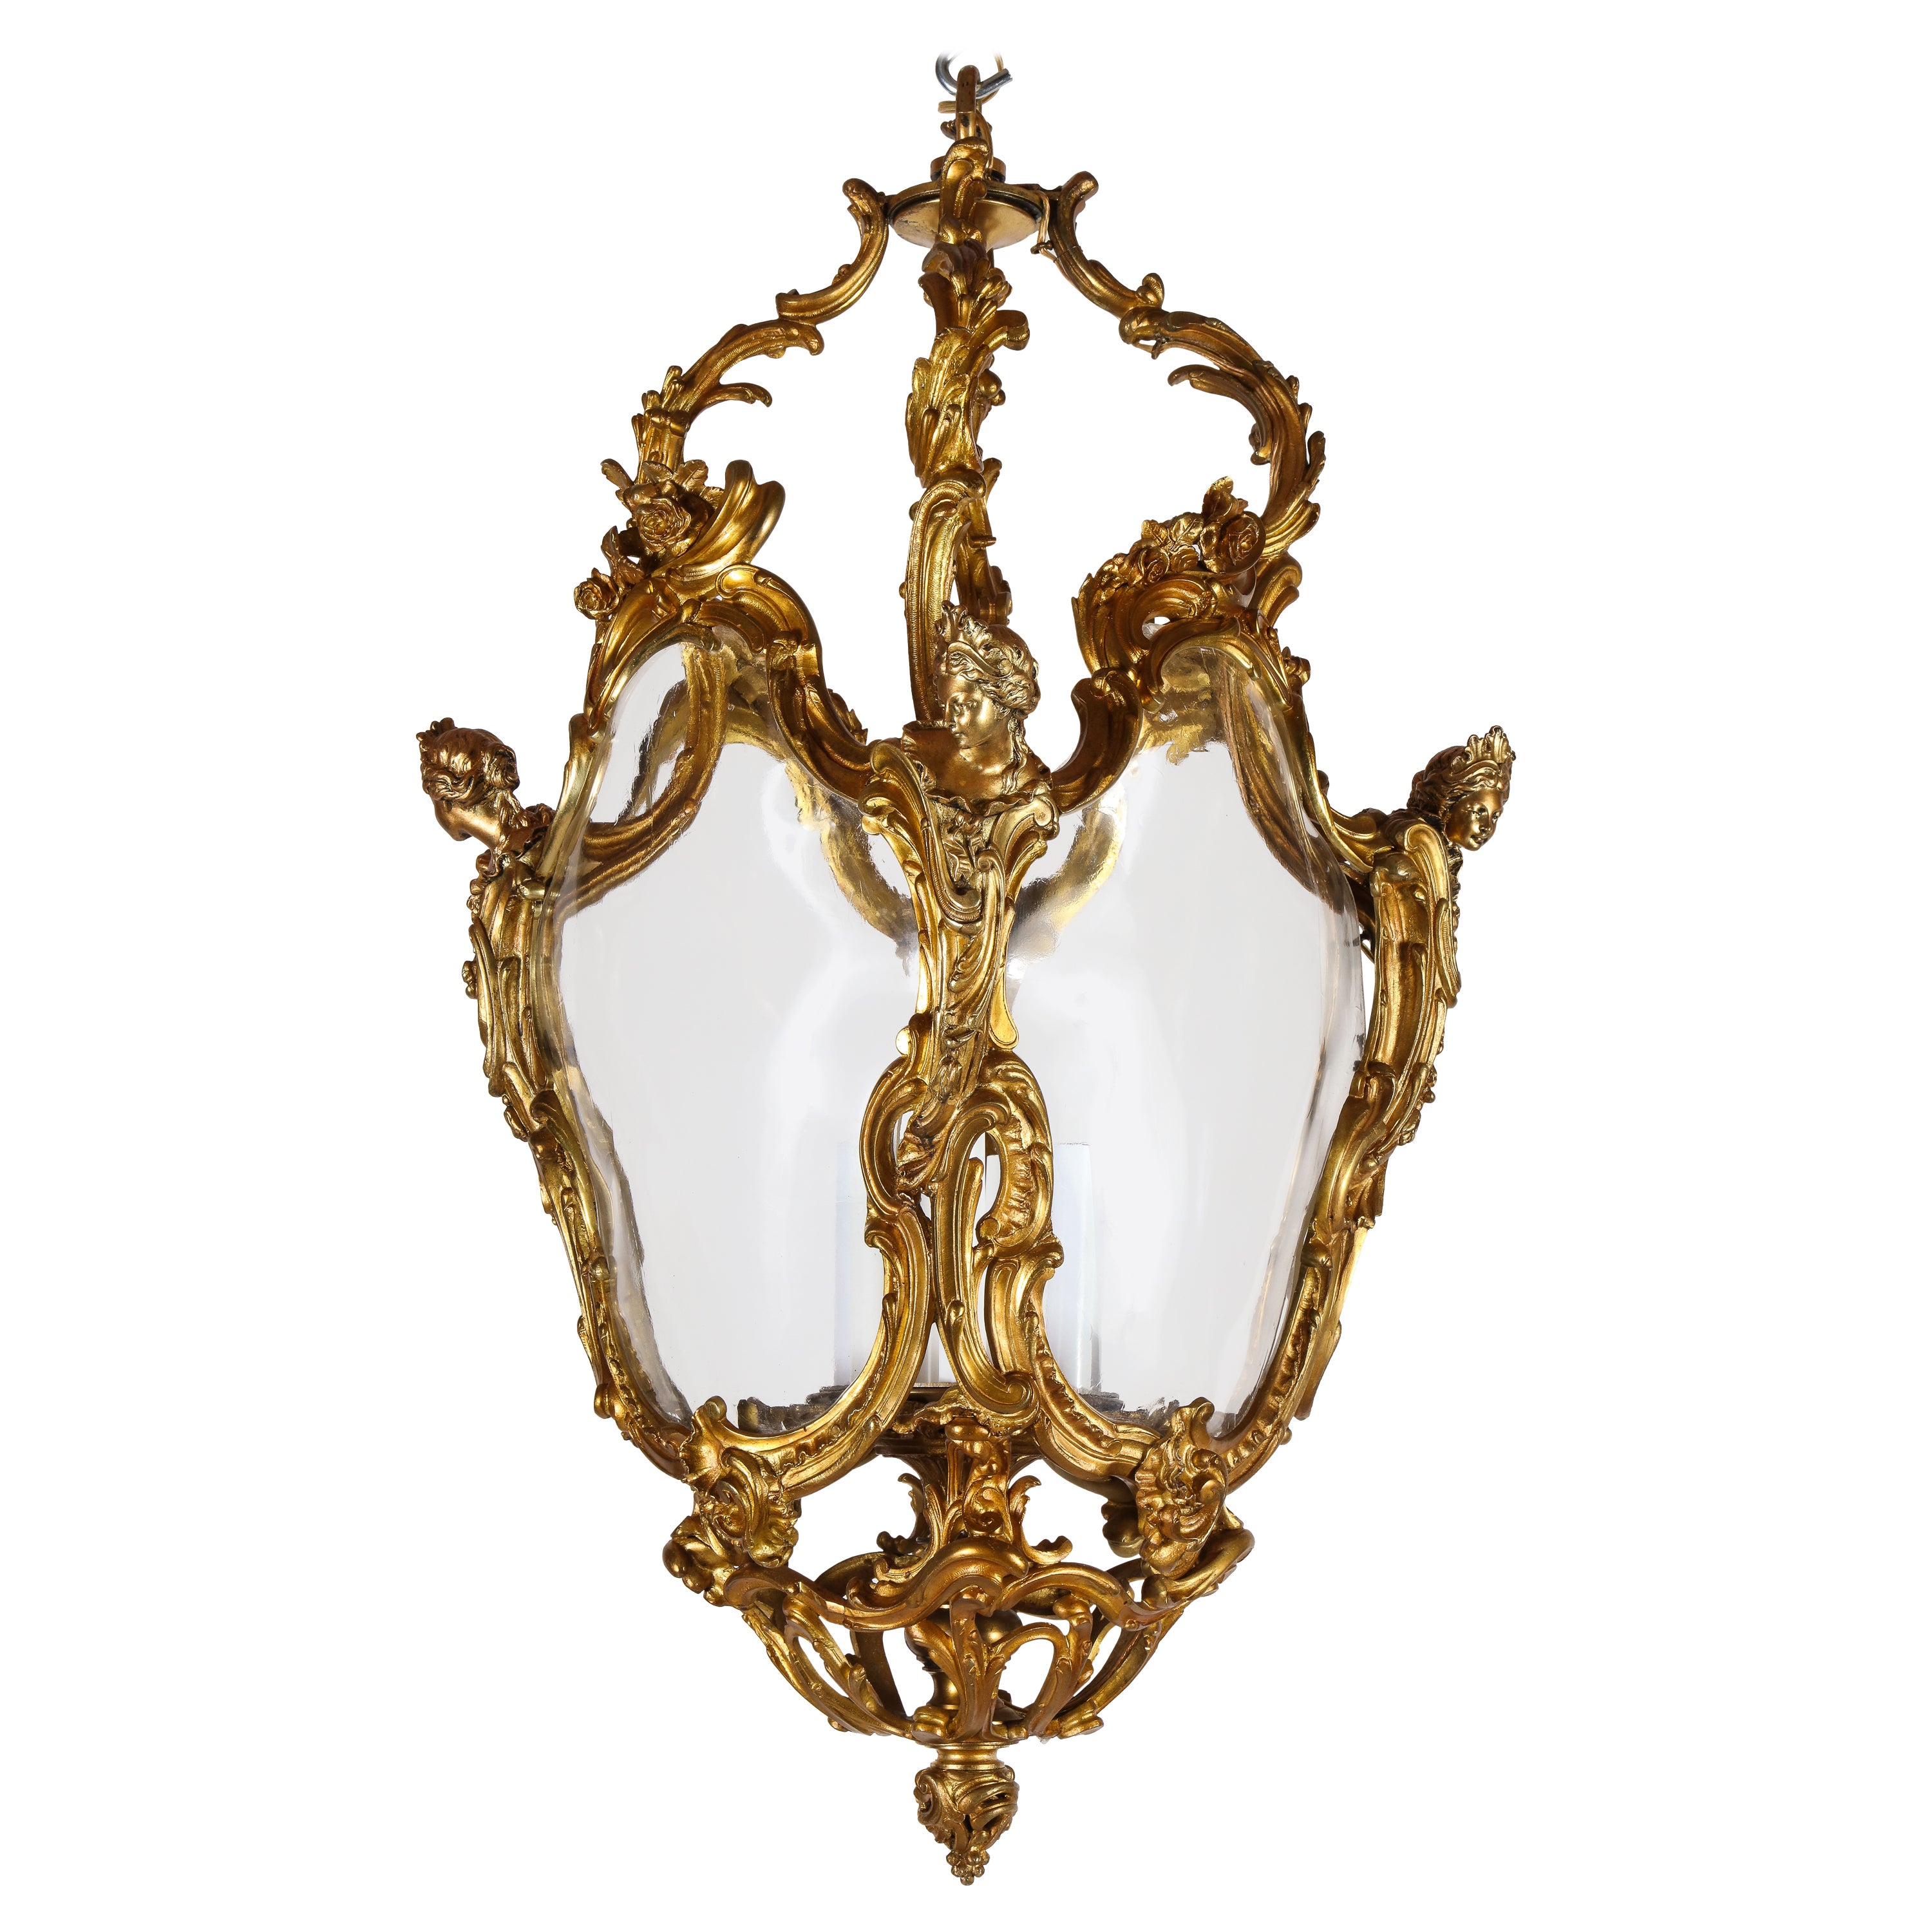 Ancienne lanterne à sept lumières figurative française du 19ème siècle en bronze doré et verre